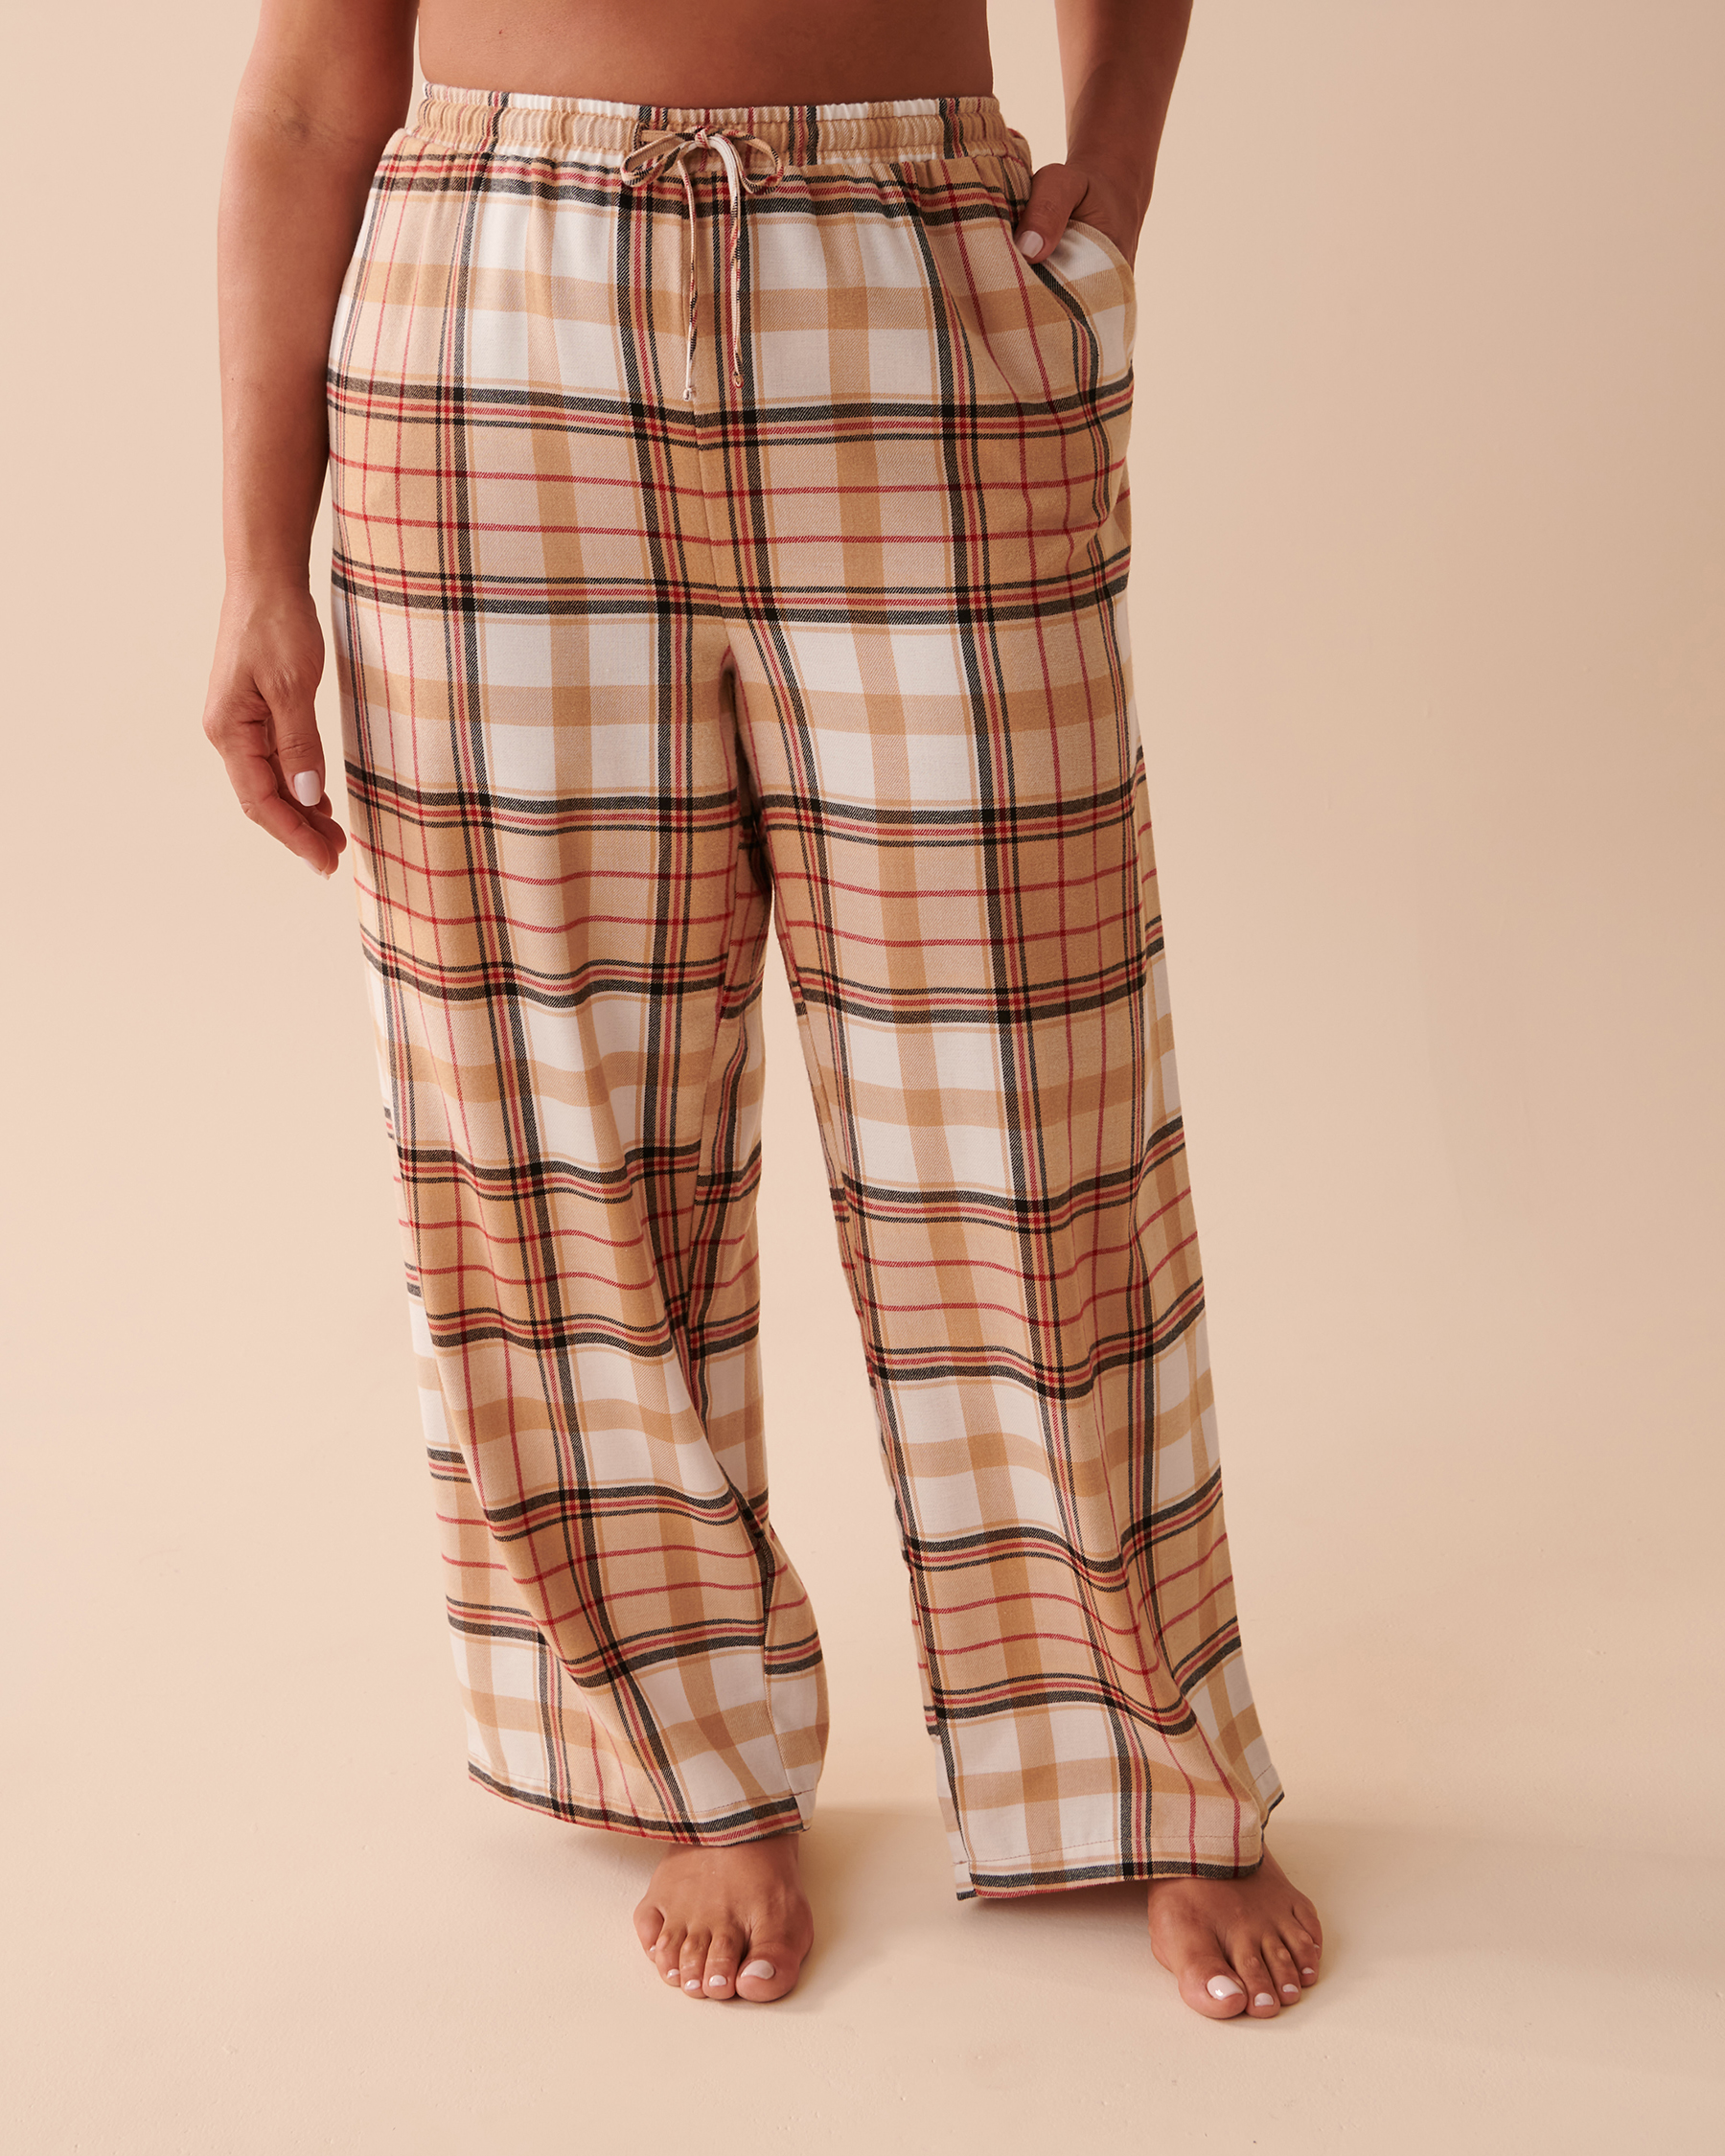 oll  pajamas slacks  brown